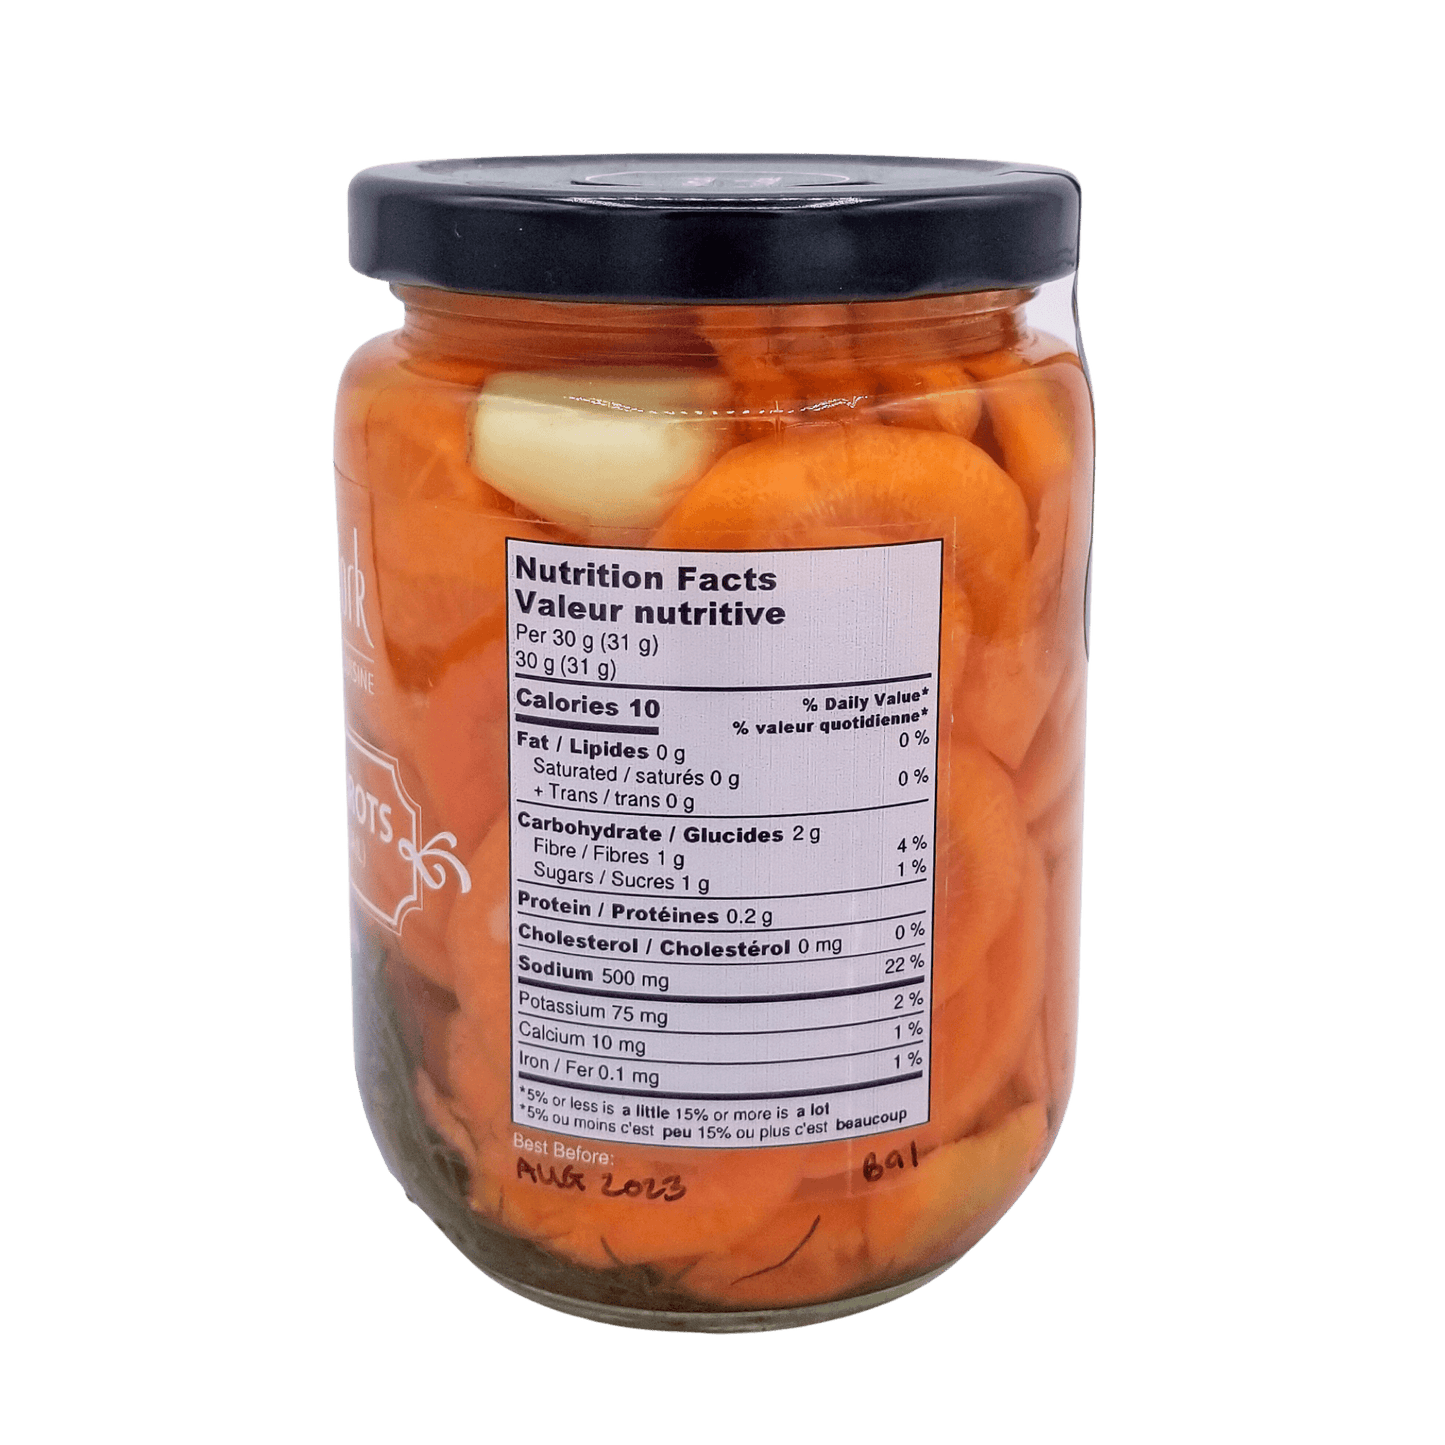 Dill & Garlic Carrots